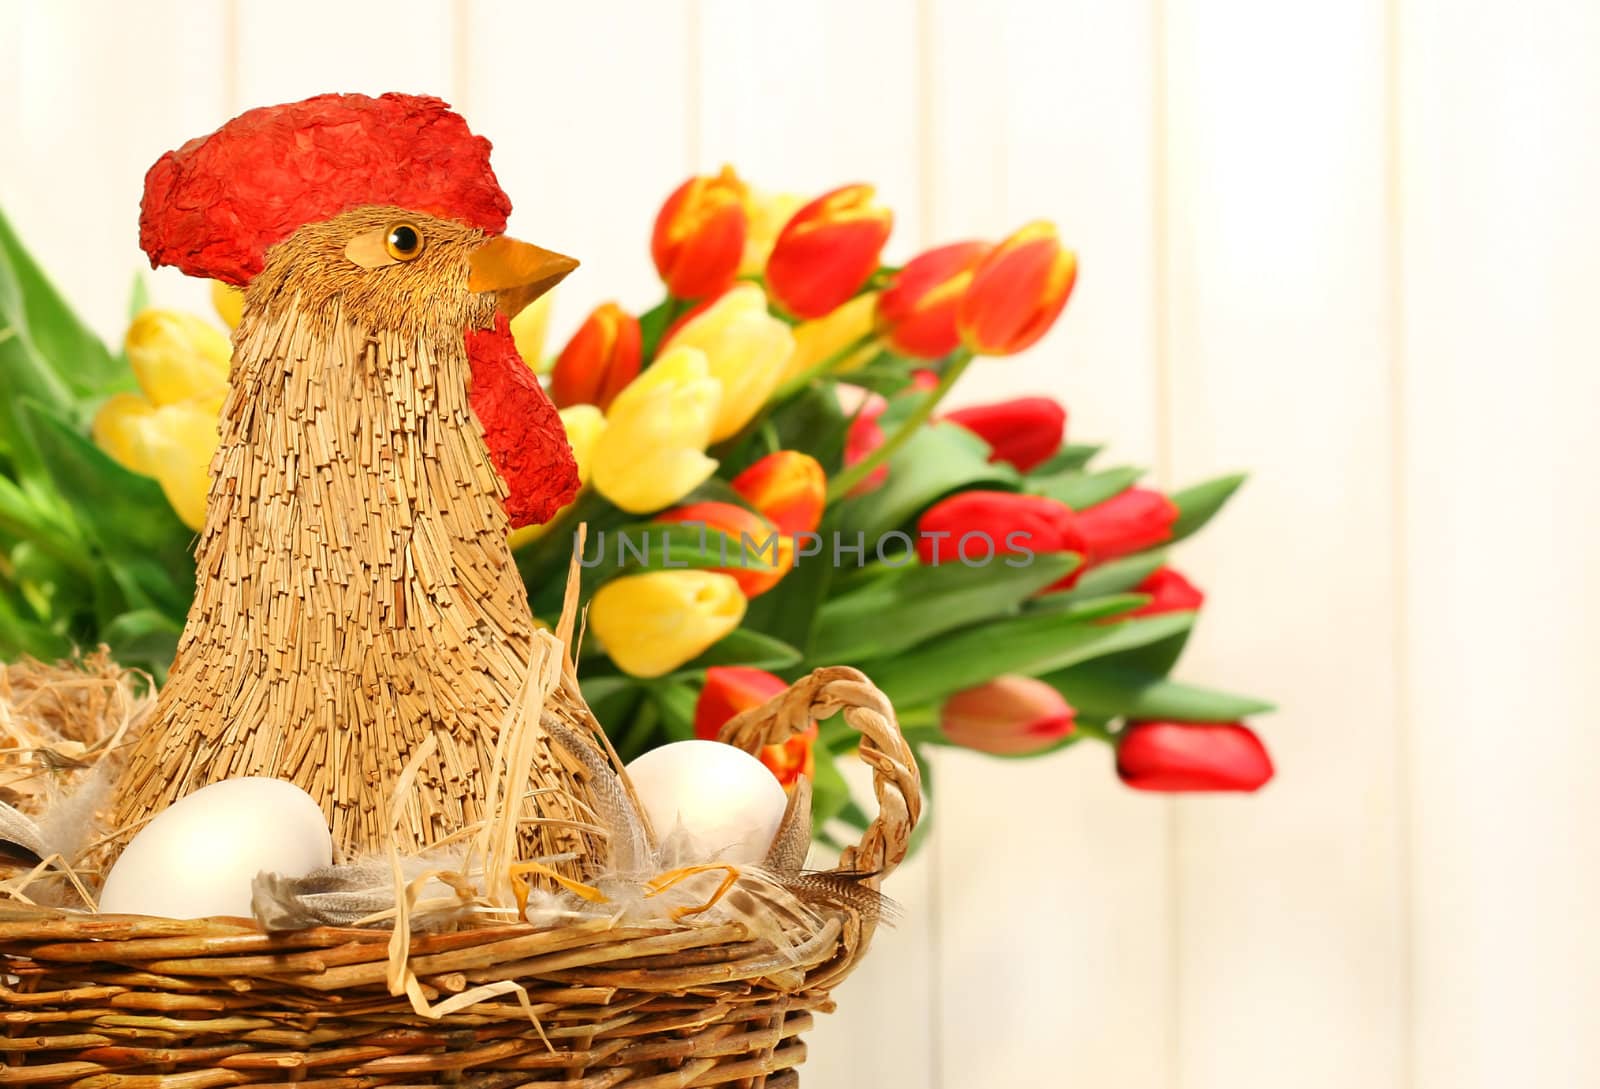 Straw chicken in wicker basket by Sandralise